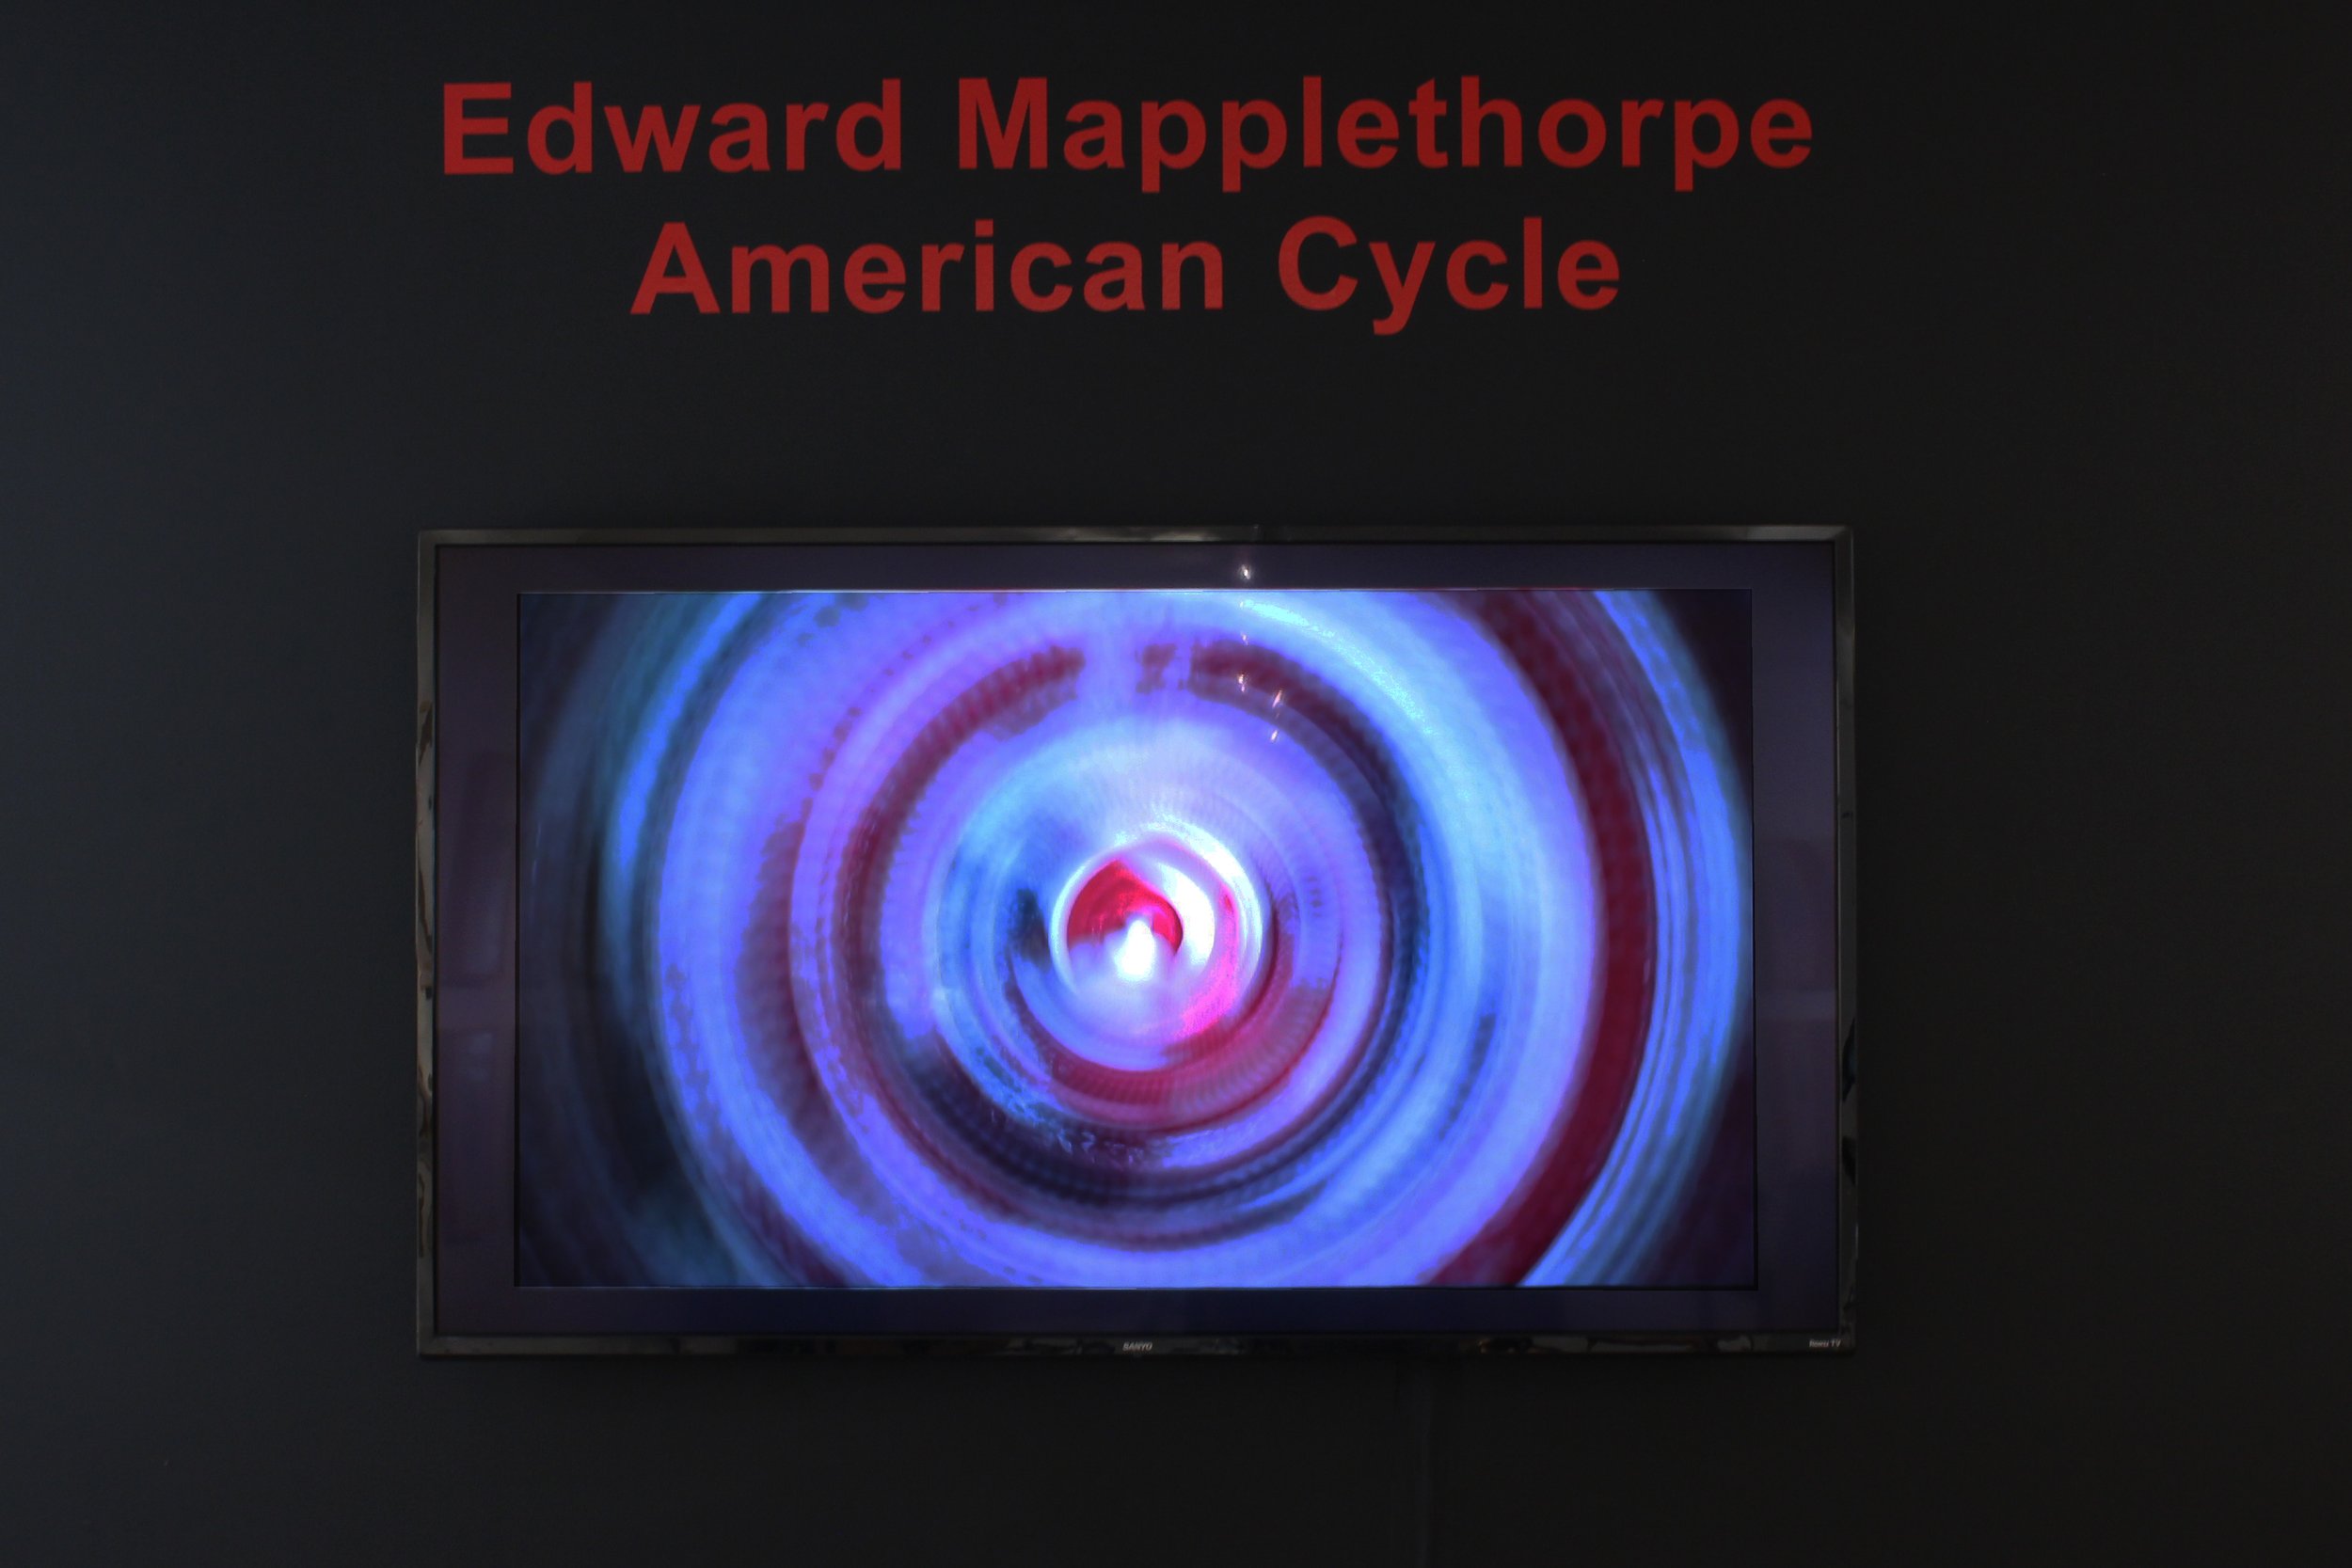 americancycle-mapplethorpe-20200923-002.JPG